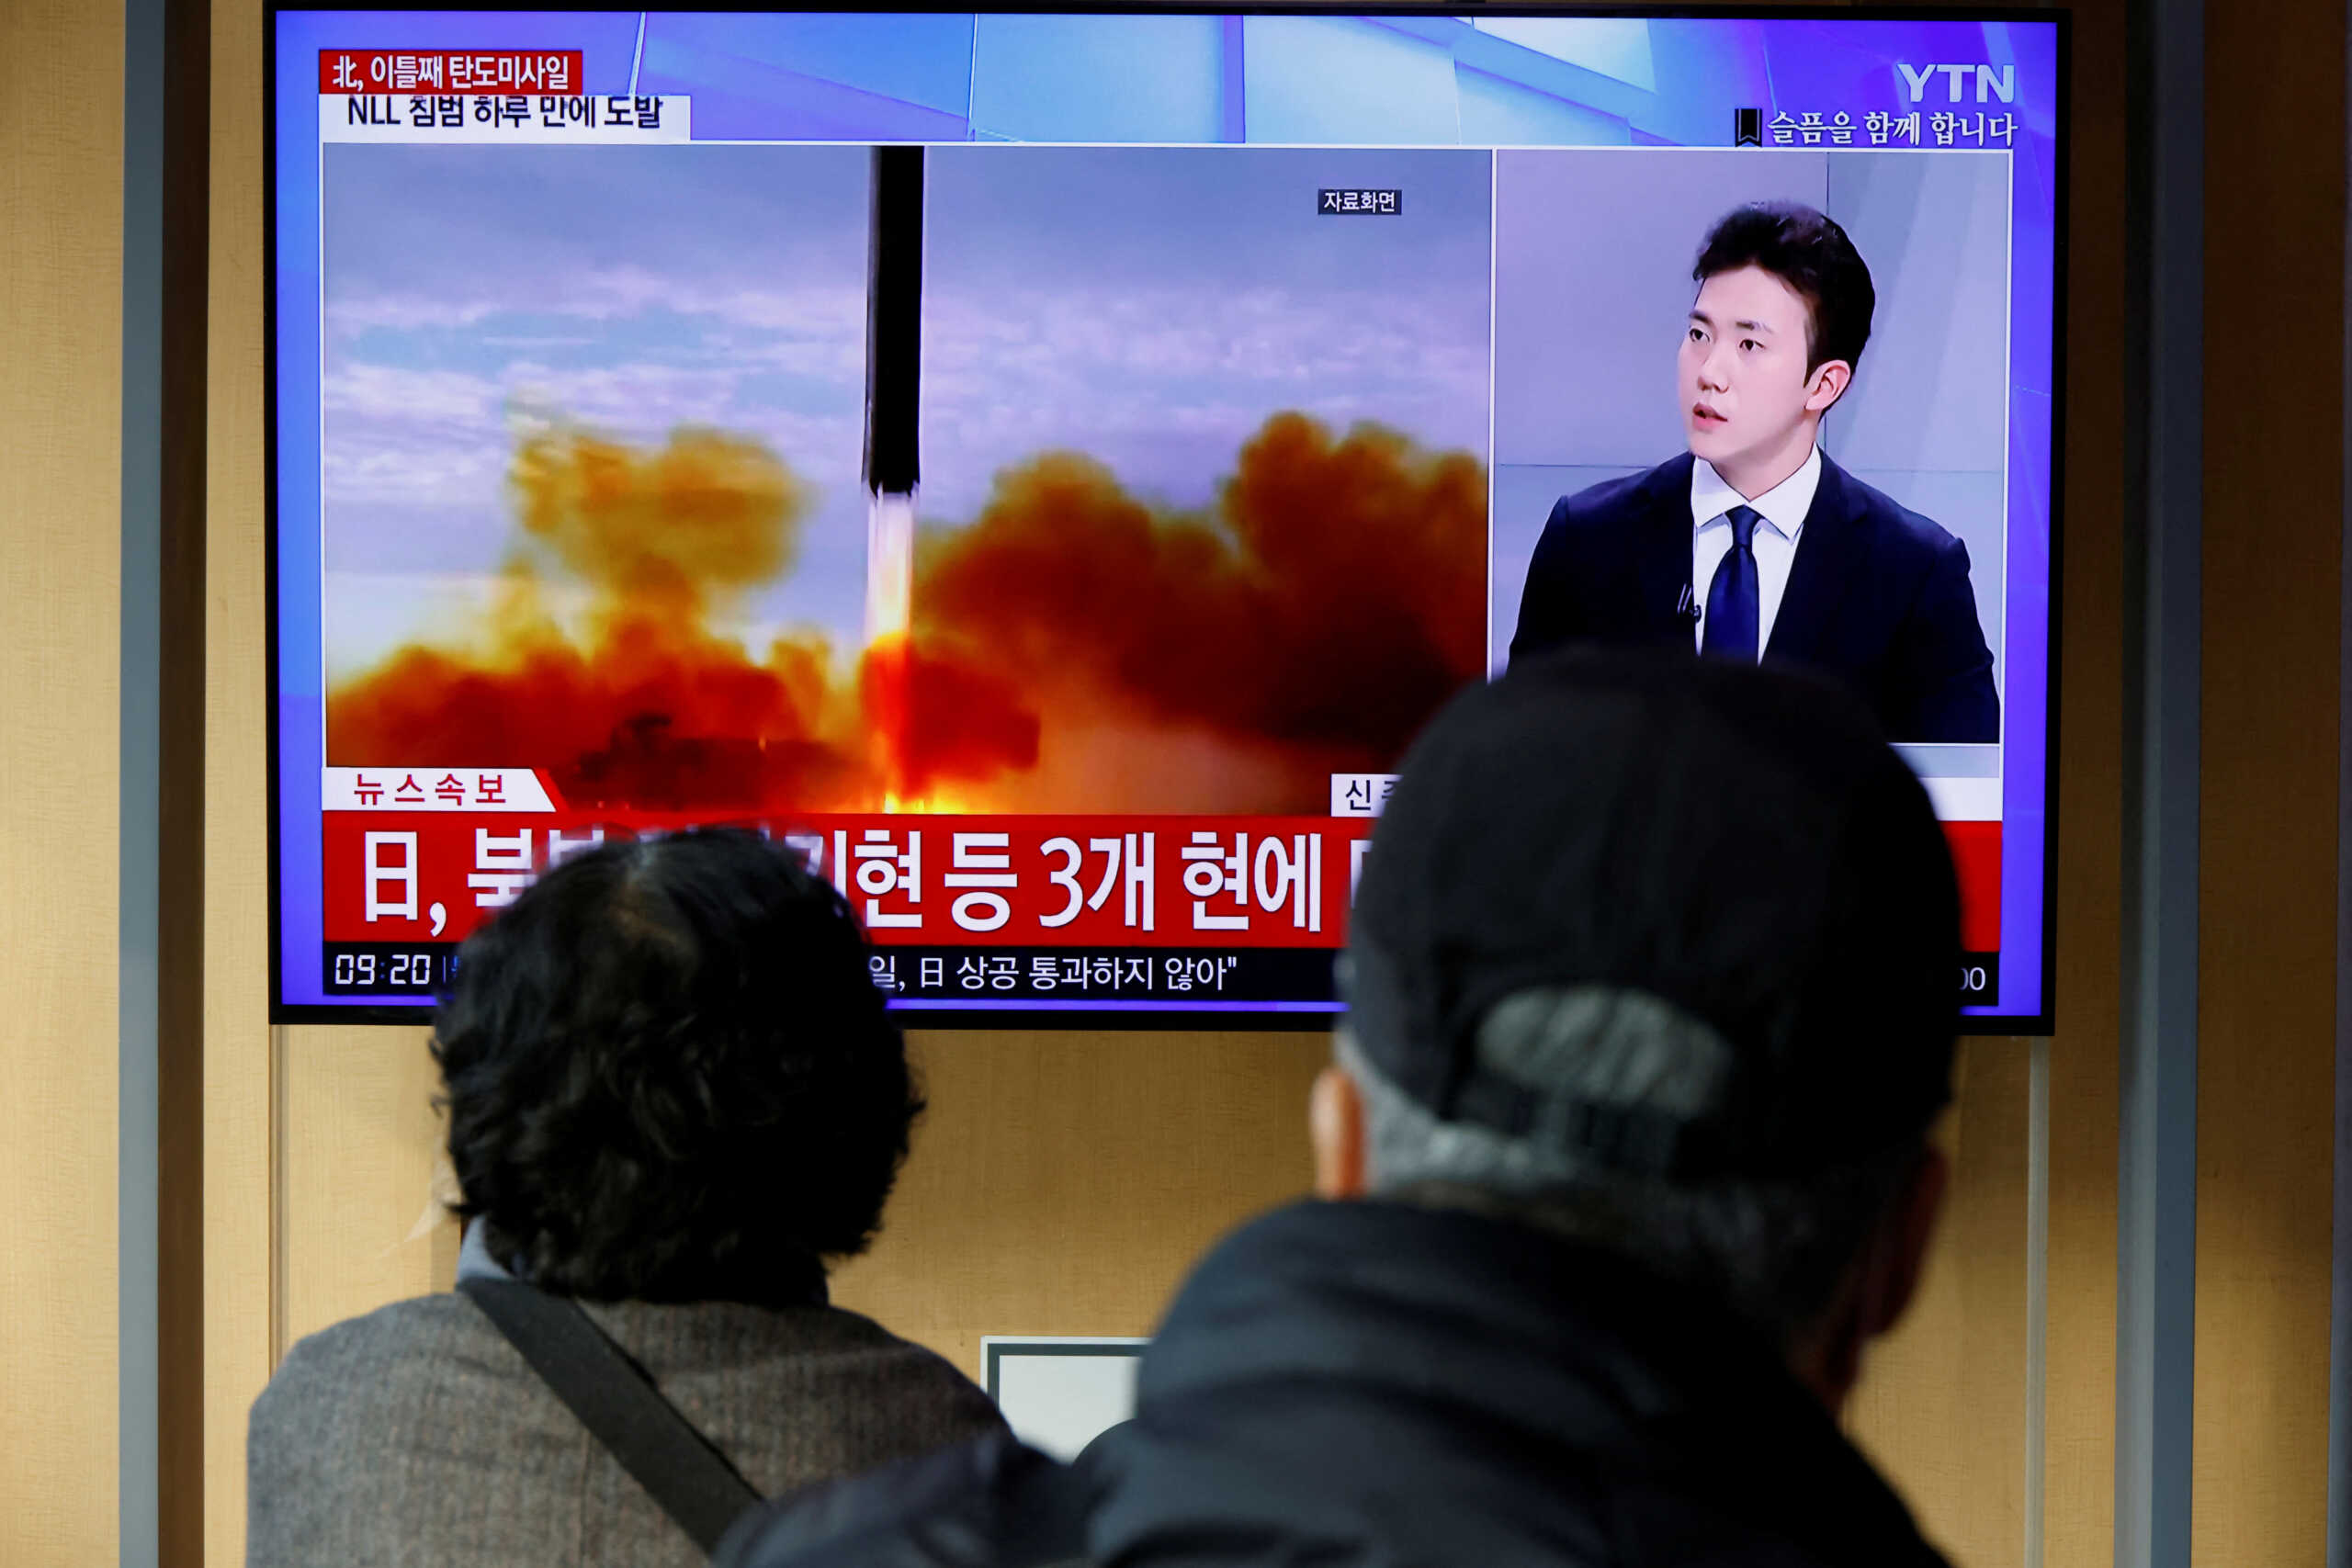 Νότια Κορέα, Ιαπωνία και ΗΠΑ οργανώνουν σύνοδο κορυφής, καθώς αυξάνεται η ένταση με τη Βόρεια Κορέα